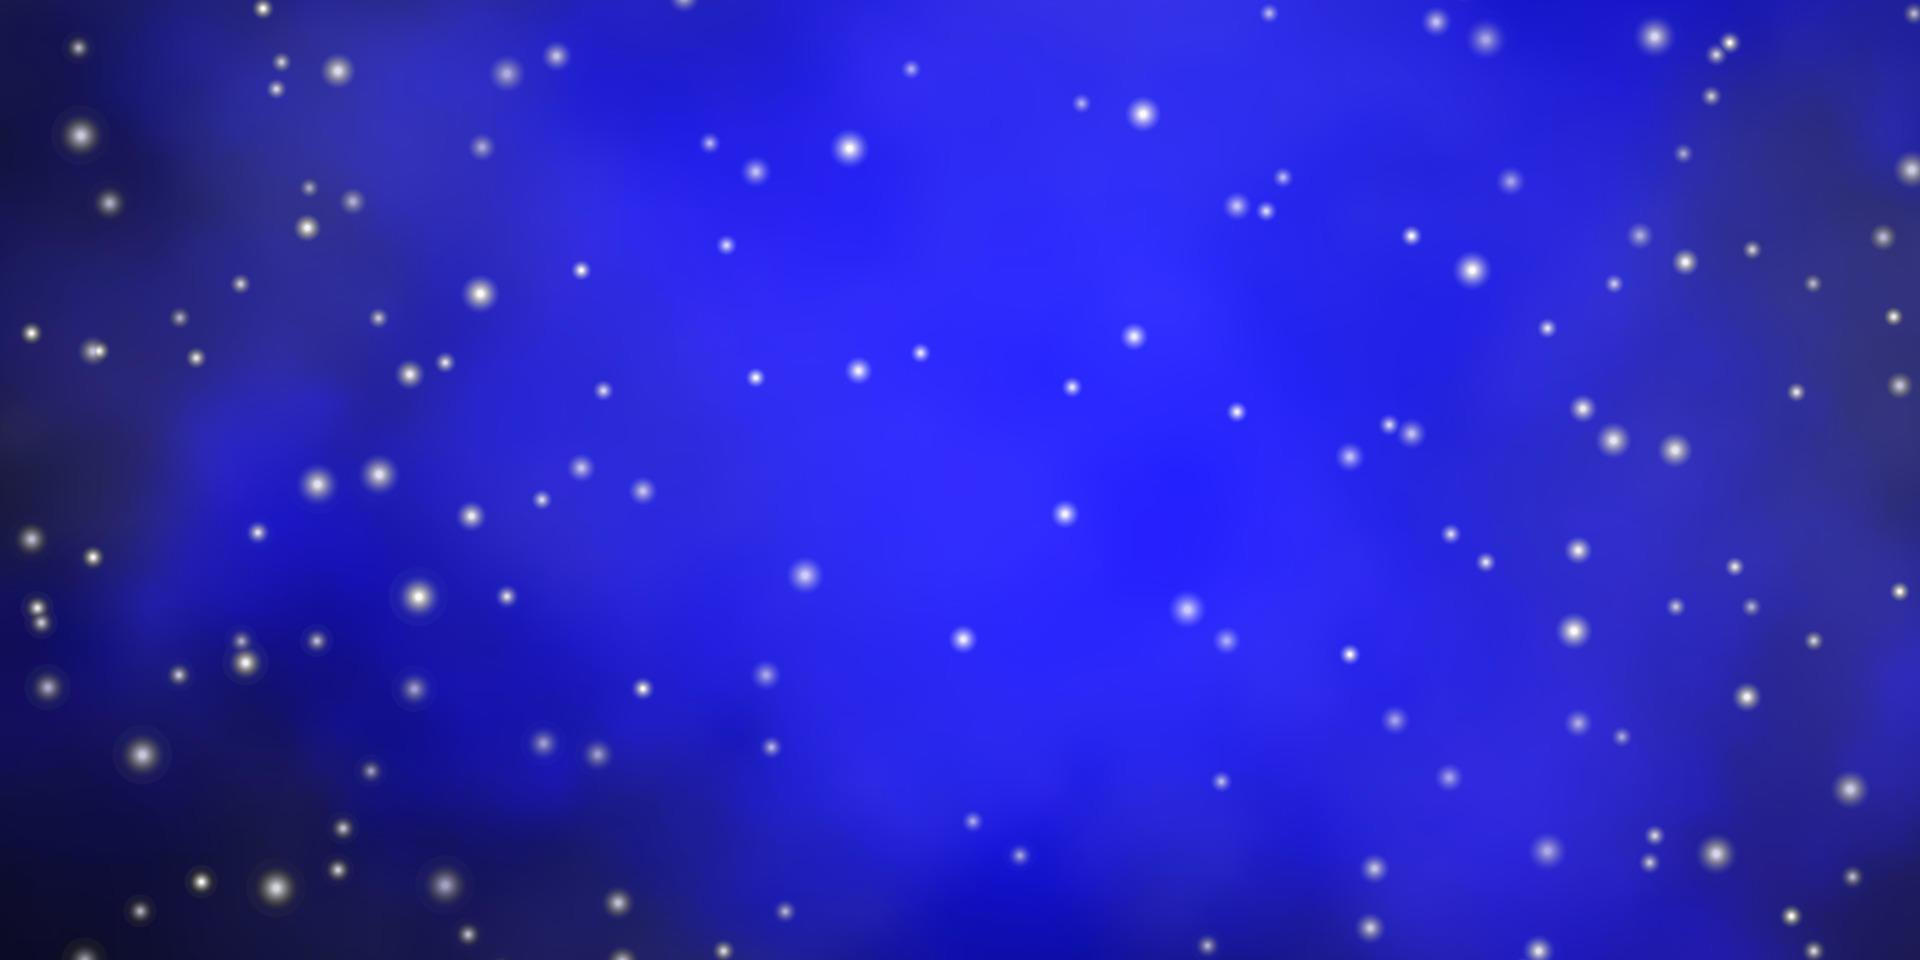 fundo vector azul escuro com estrelas coloridas.